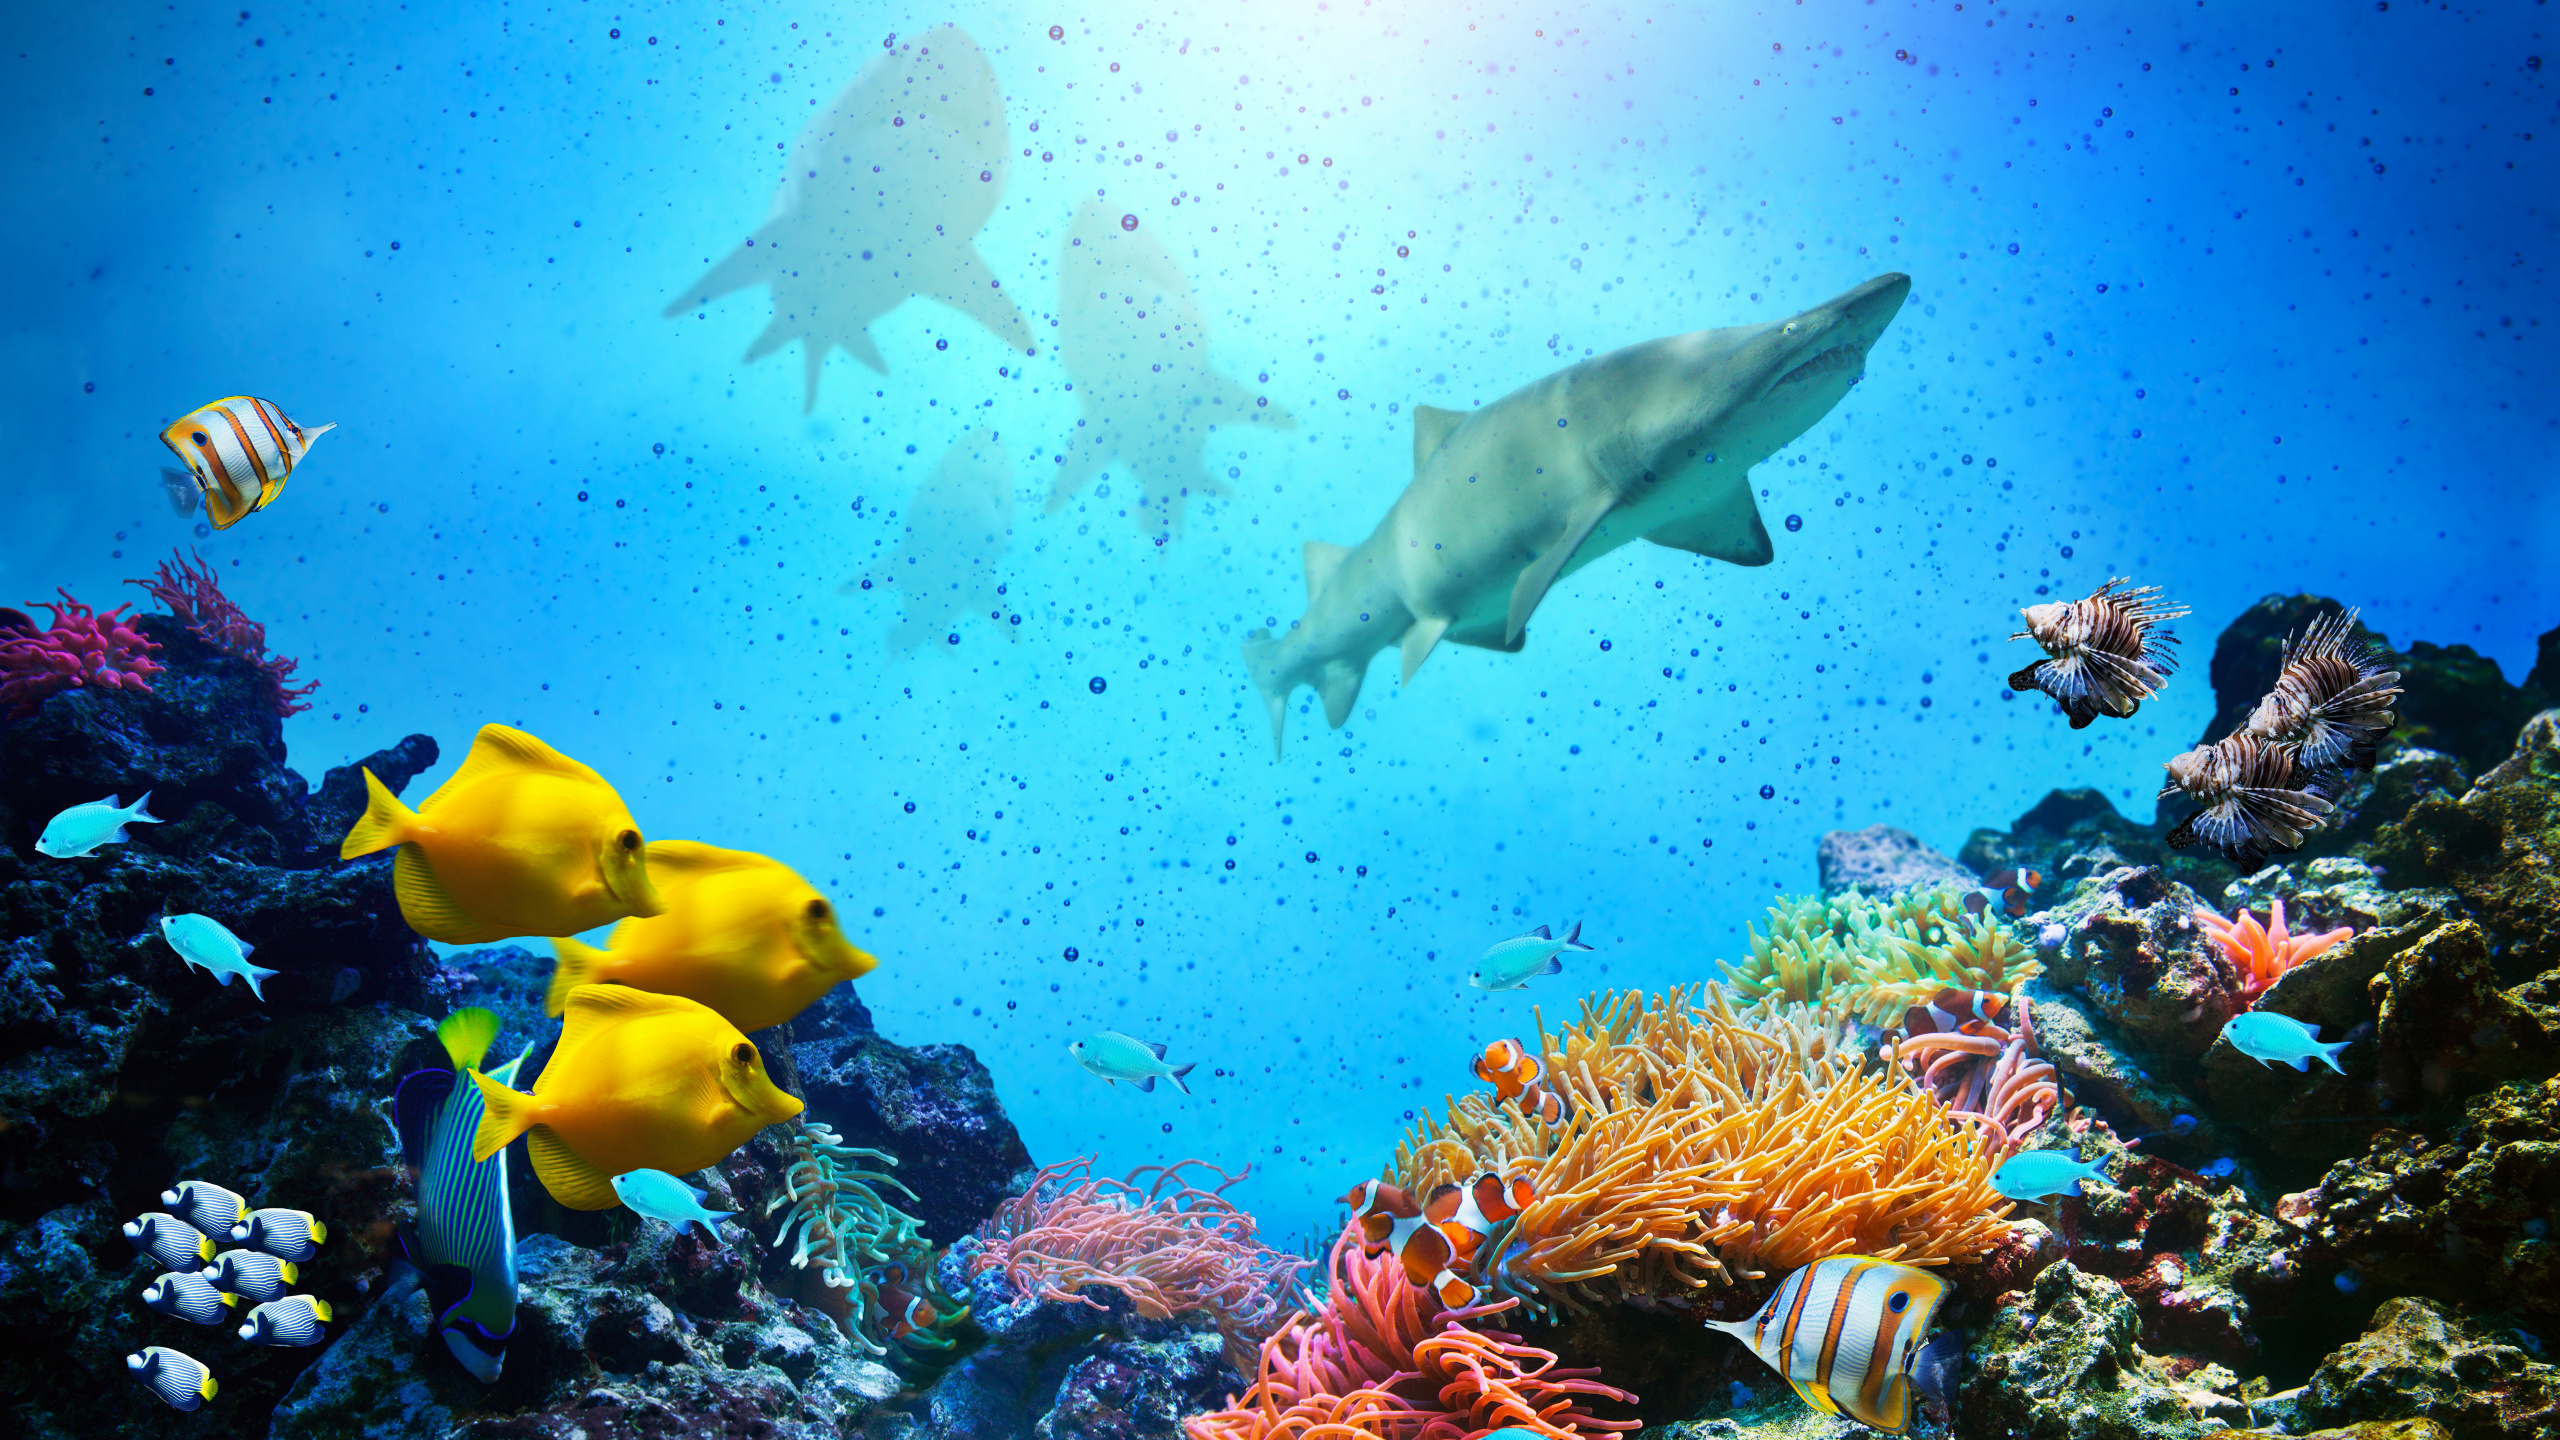 海洋, 大海, 珊瑚礁, 水下, 珊瑚礁的鱼 壁纸 2560x1440 允许